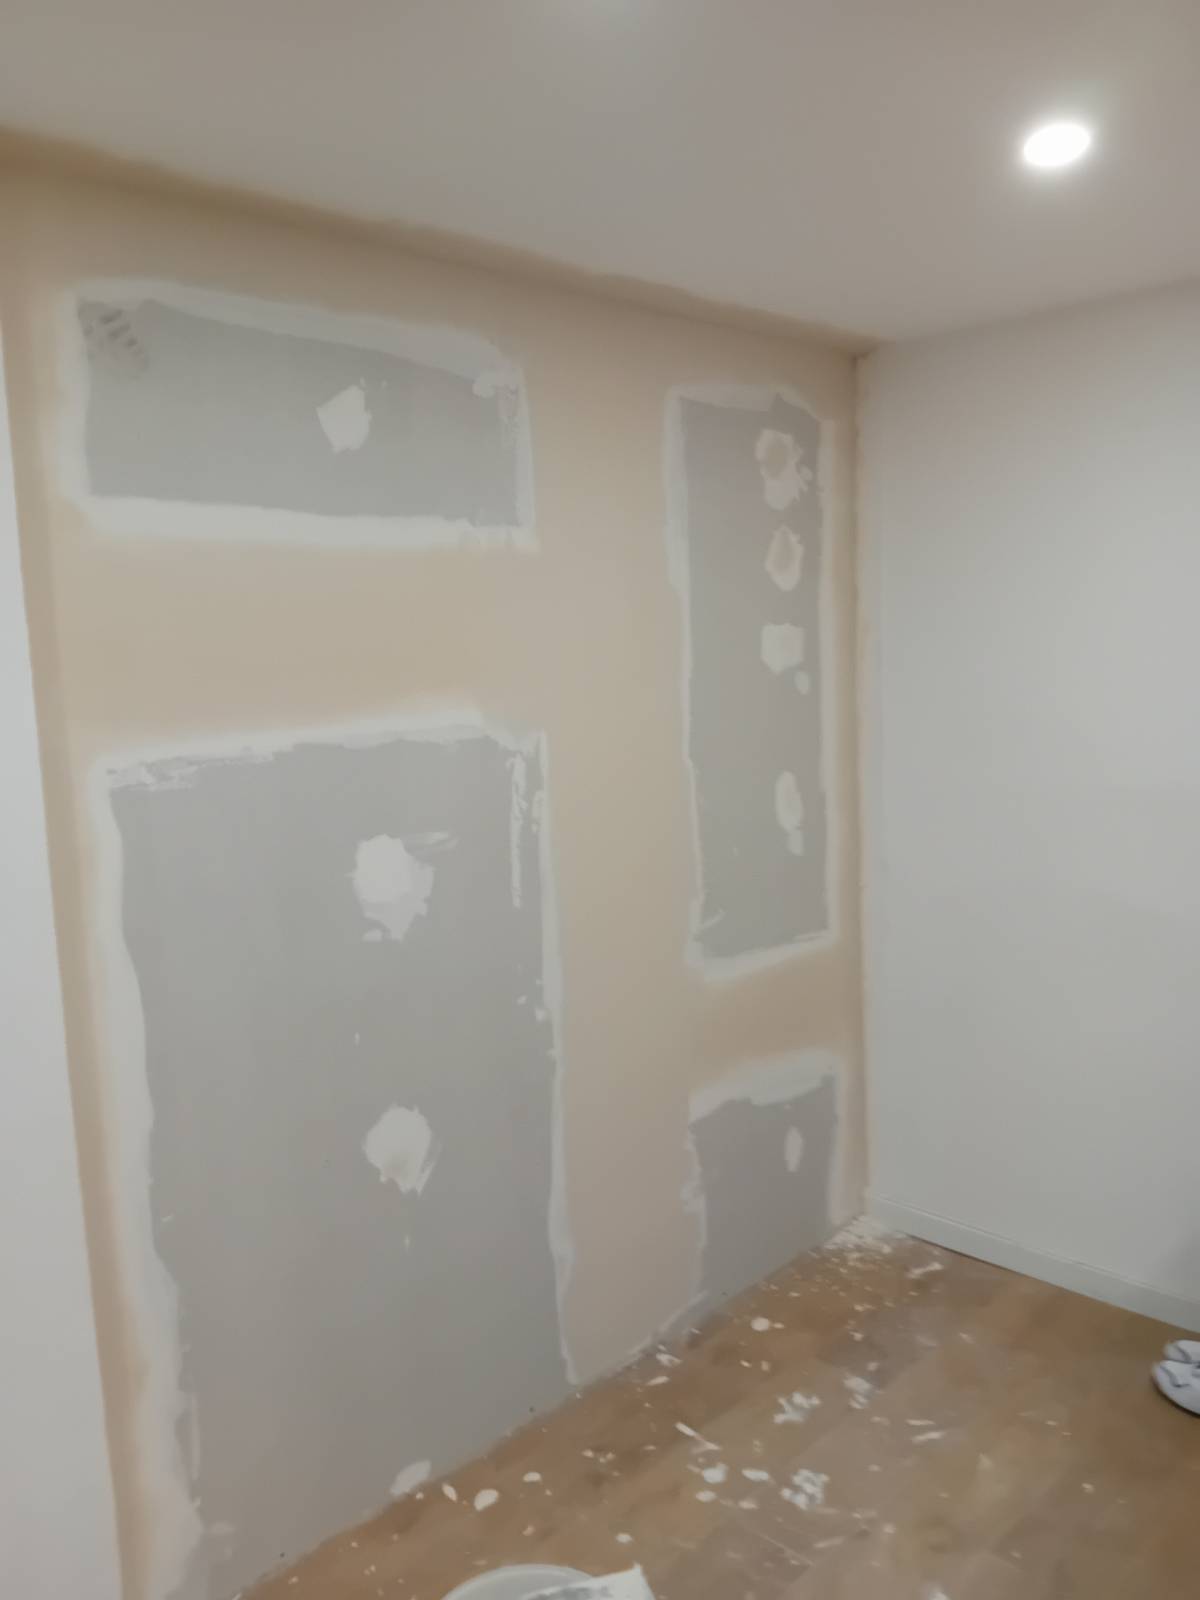 InovArt's Drywall - Sesimbra - Remodelação da Casa